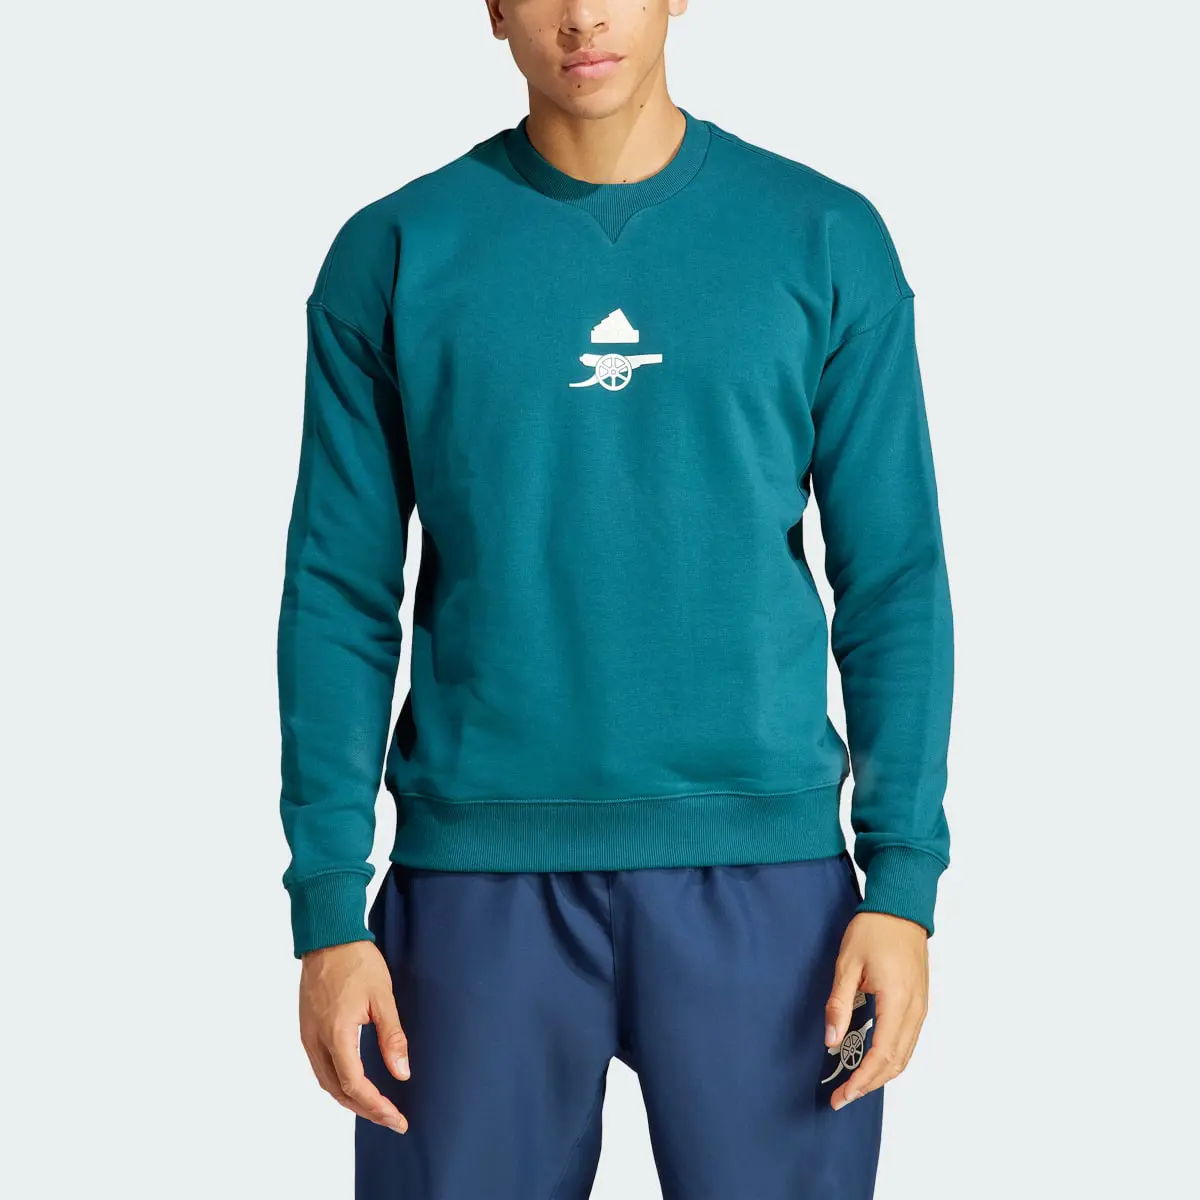 Adidas Arsenal LFSTLR Heavy Cotton Sweatshirt. 1